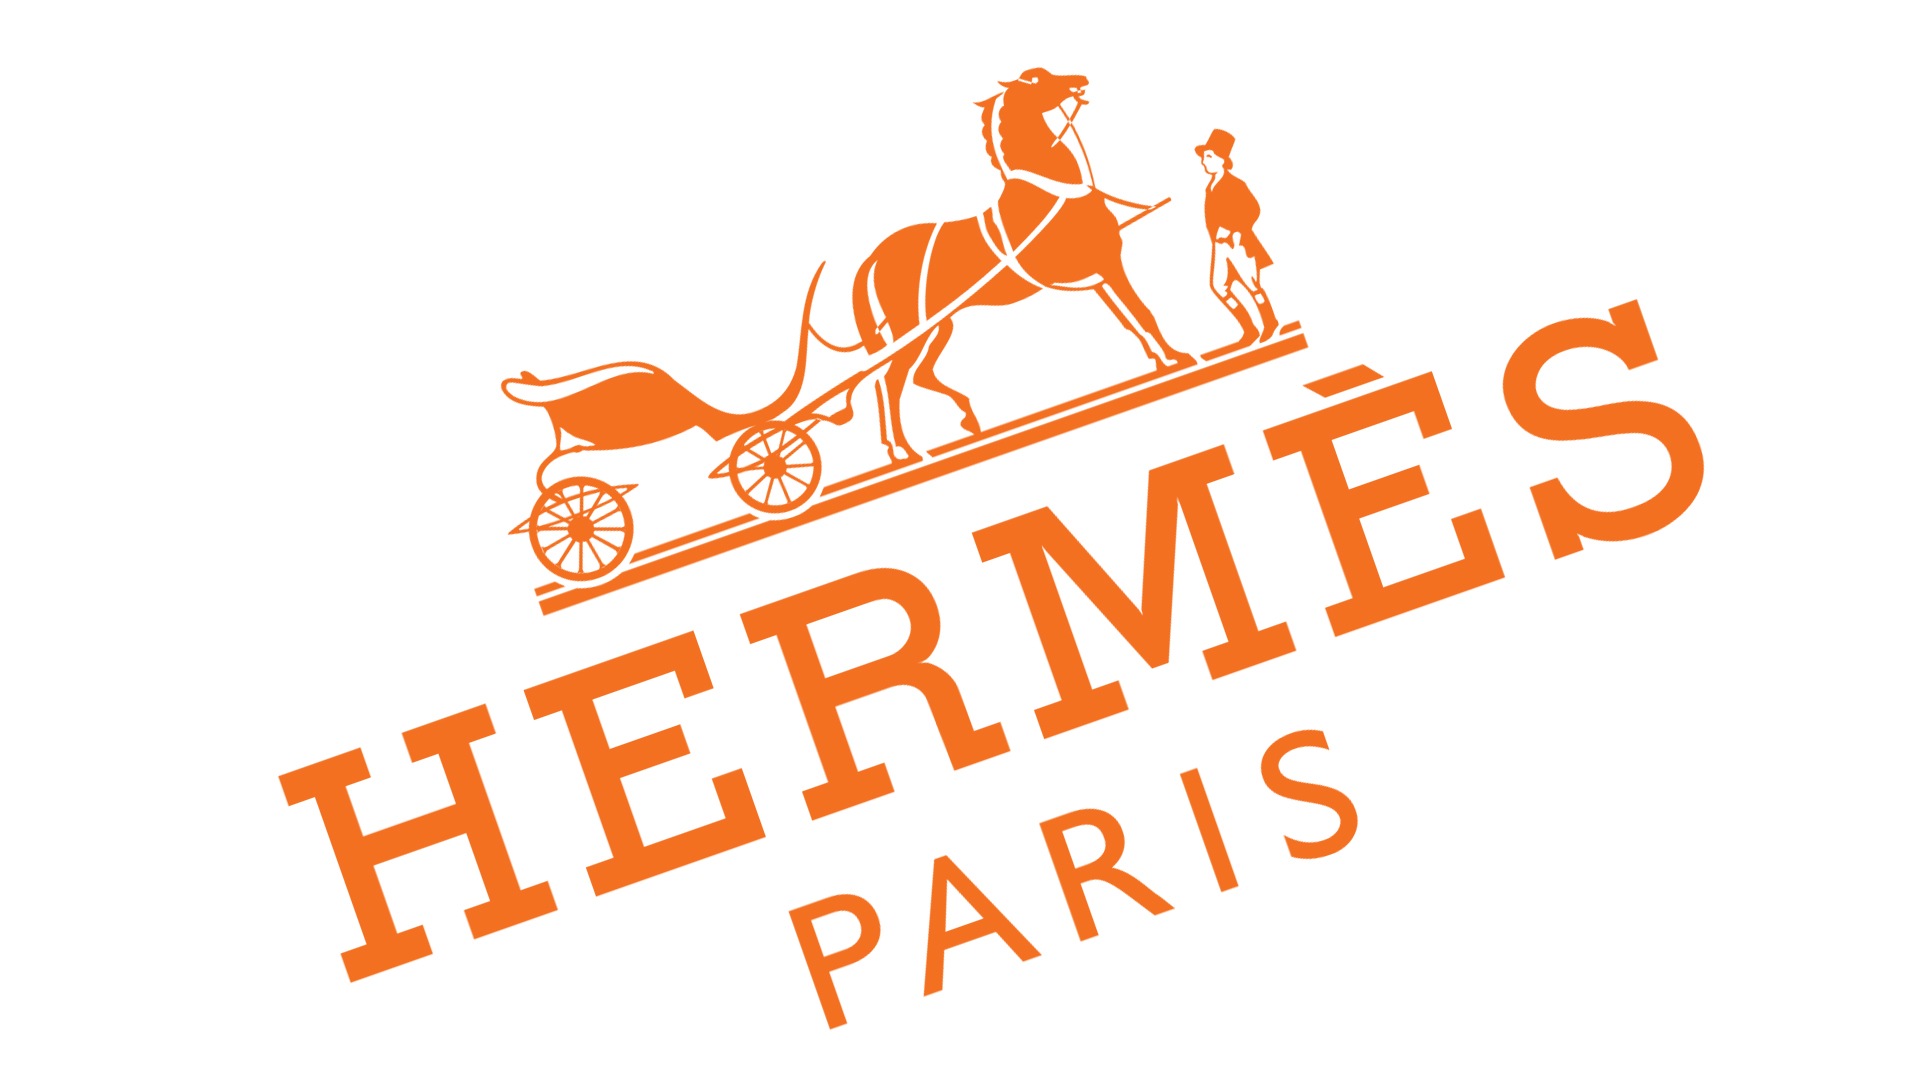 Logo De Hermes La Historia Y El Significado Del Logotipo La Marca Y Images